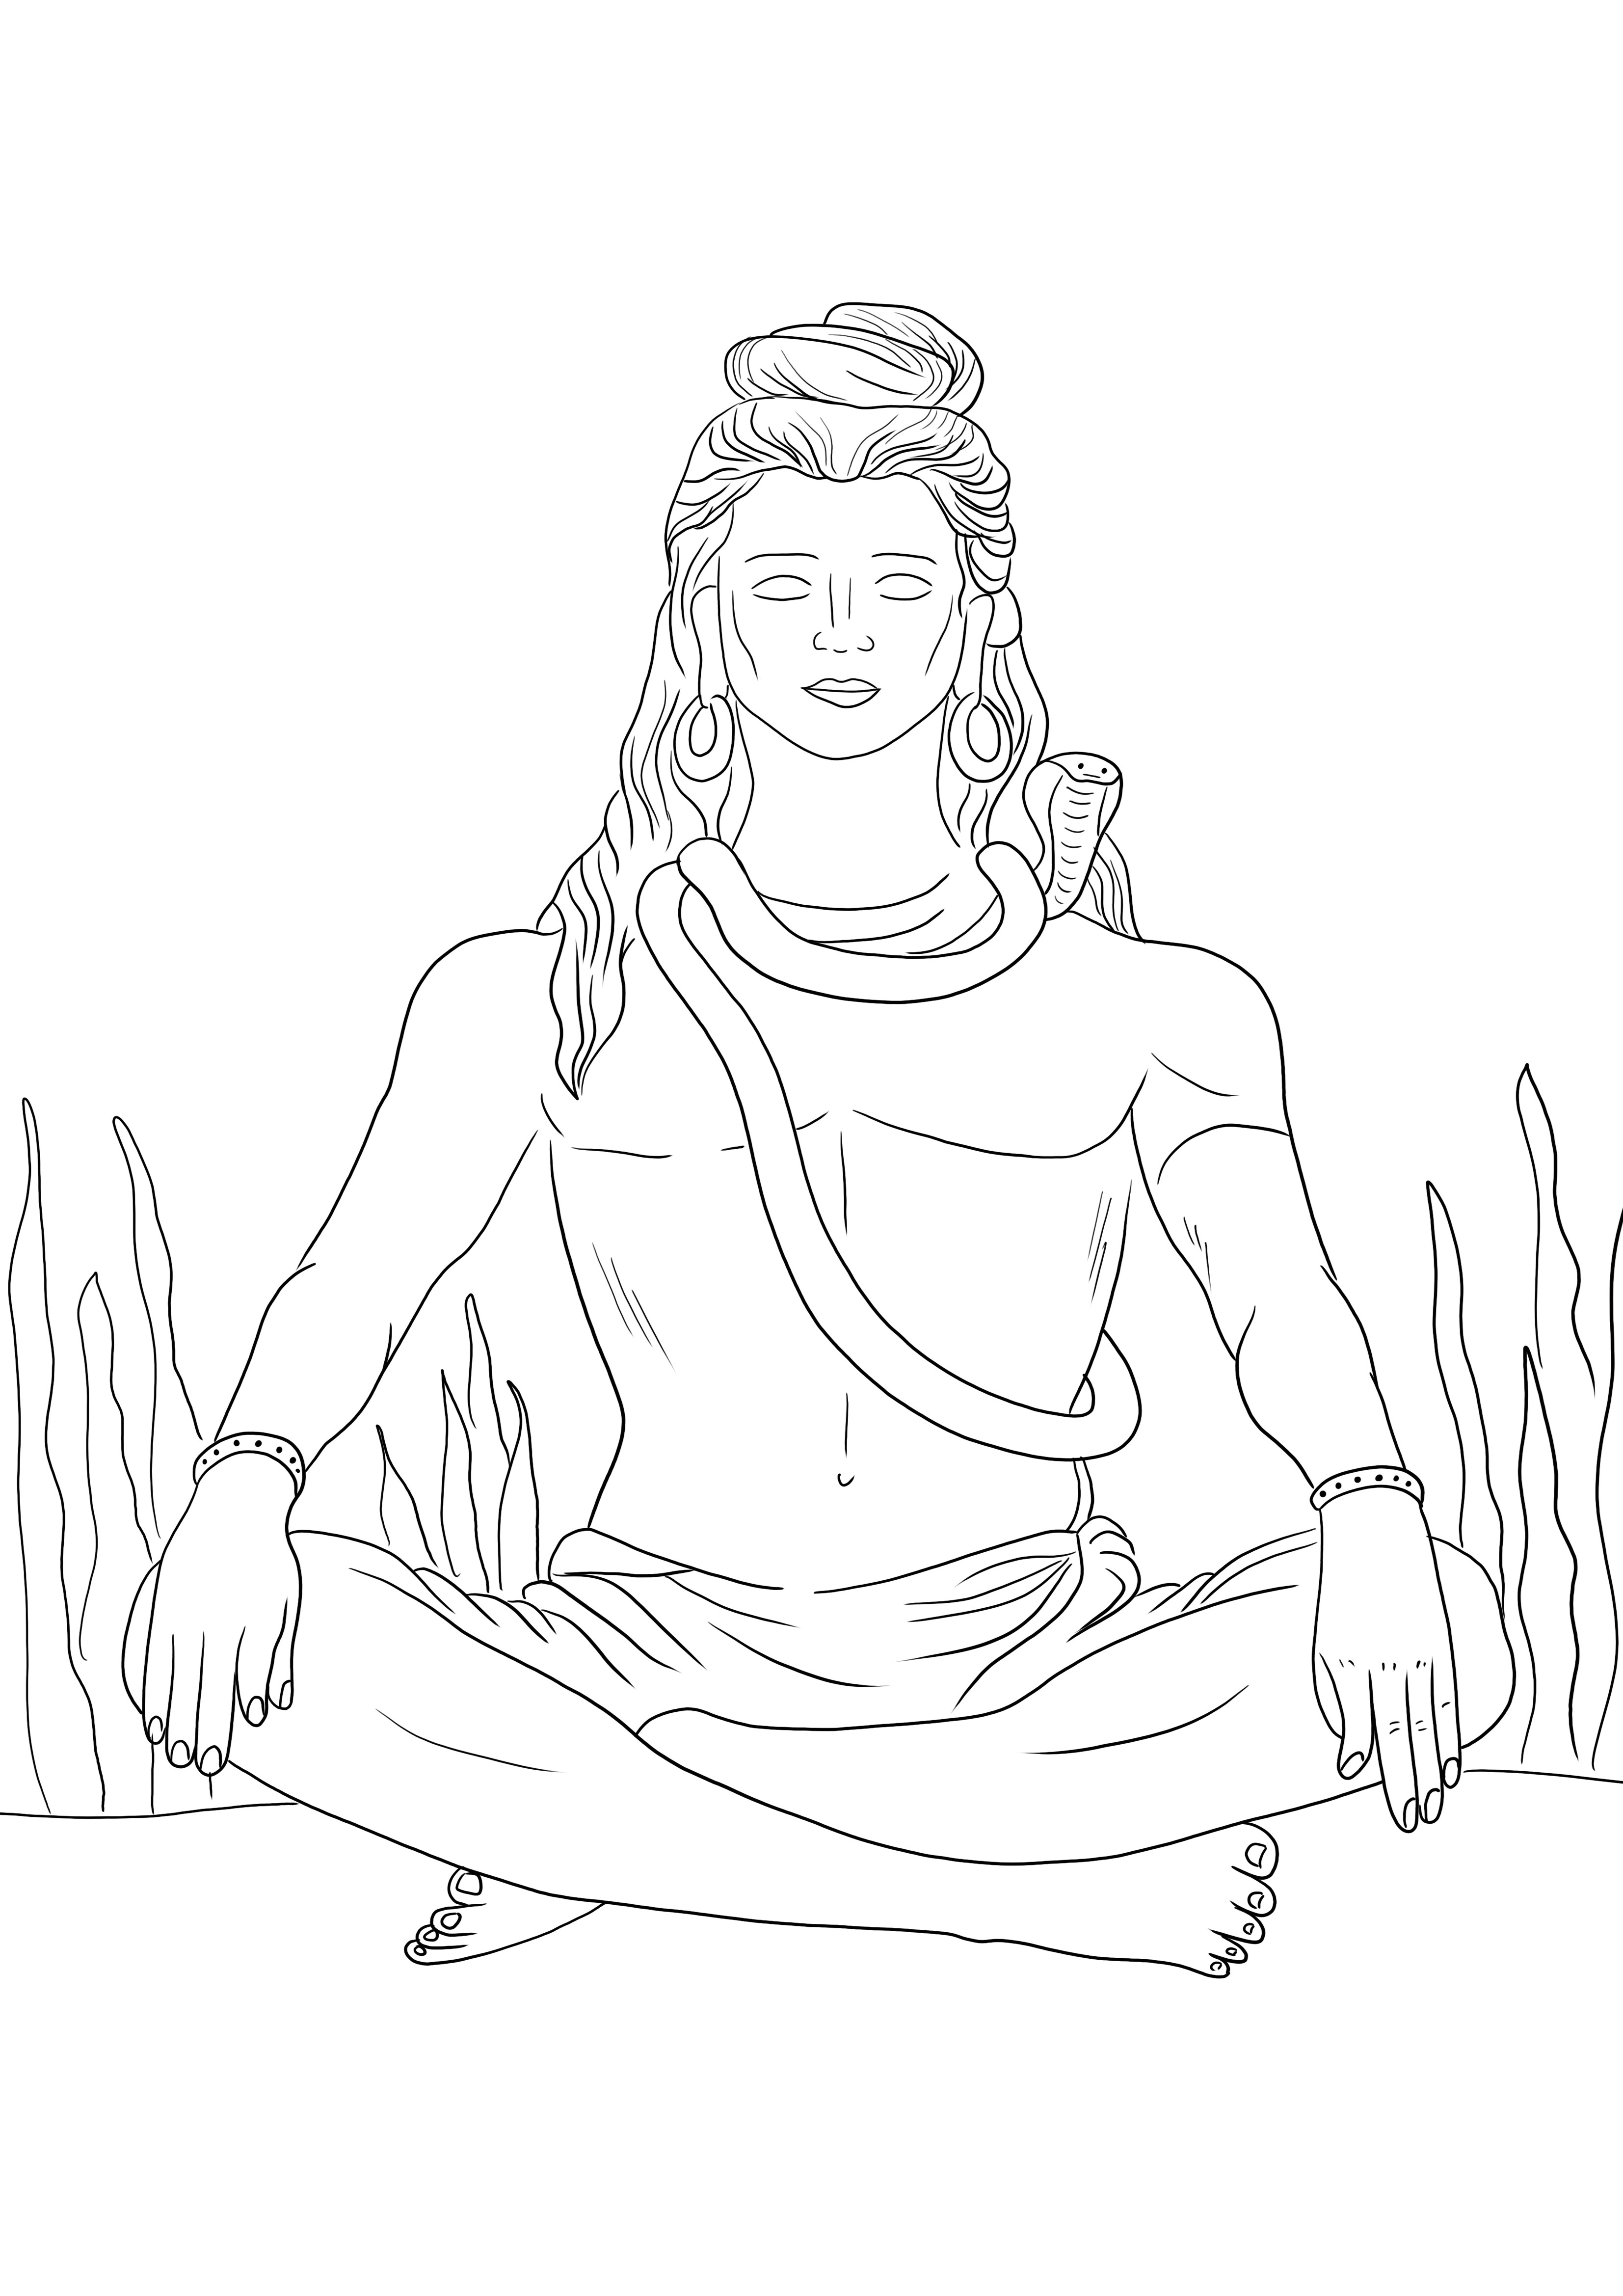 Lord Shiva ist kostenlos druckbar, fertig zum Ausmalen und kostenlos zum Drucken